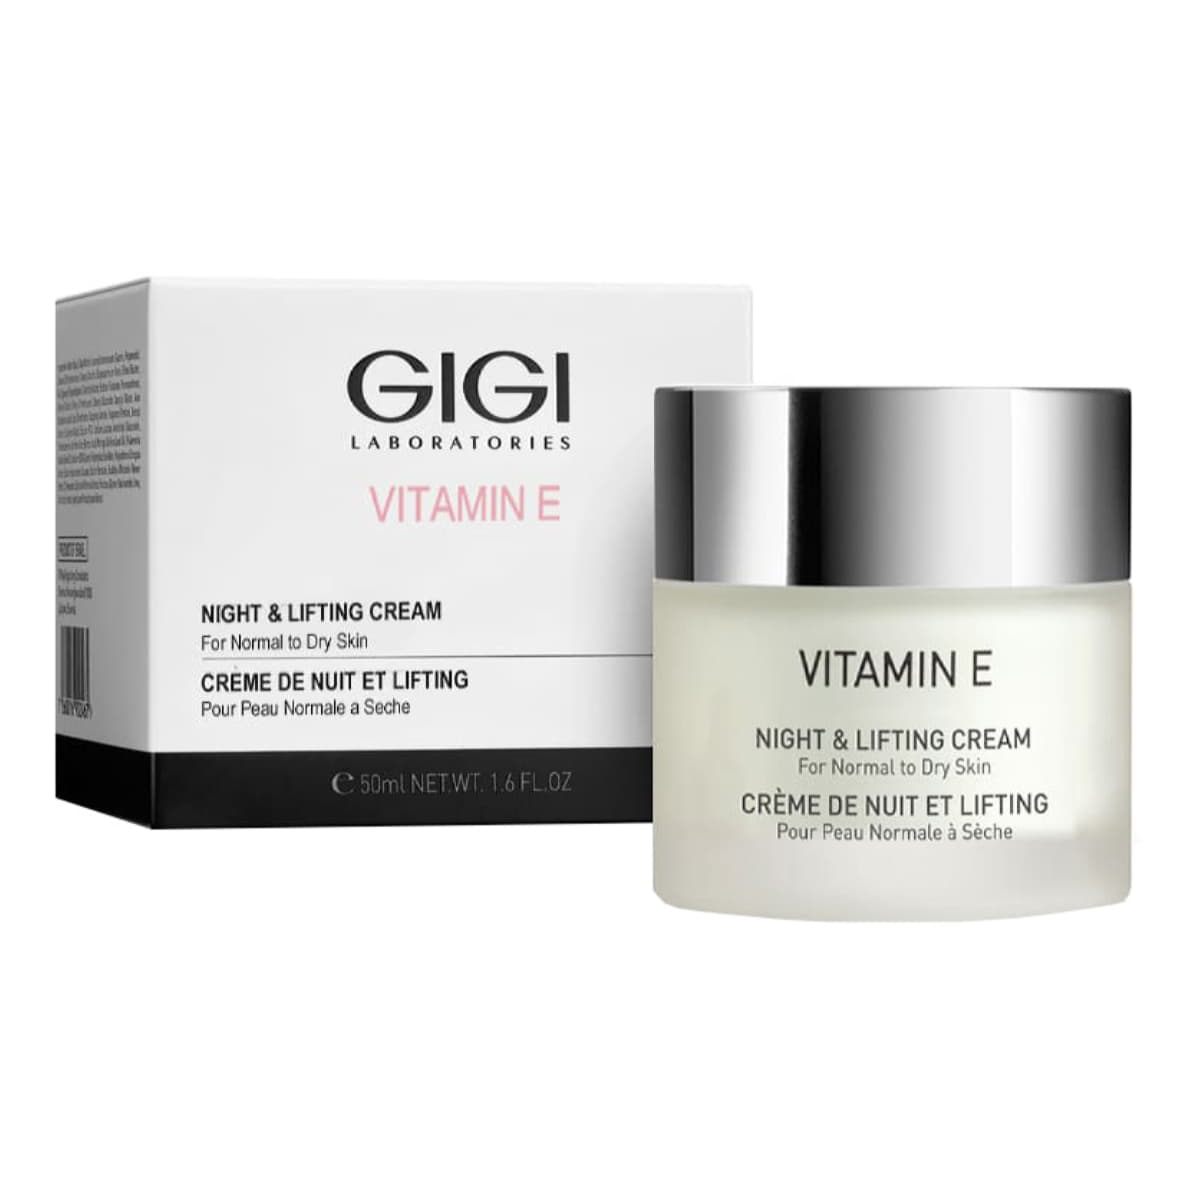 GiGi Ночной лифтинговый крем Night & Lifting Cream For Normal to Dry Skin, 50 мл (GiGi, Vitamin E) gigi vitamin e night